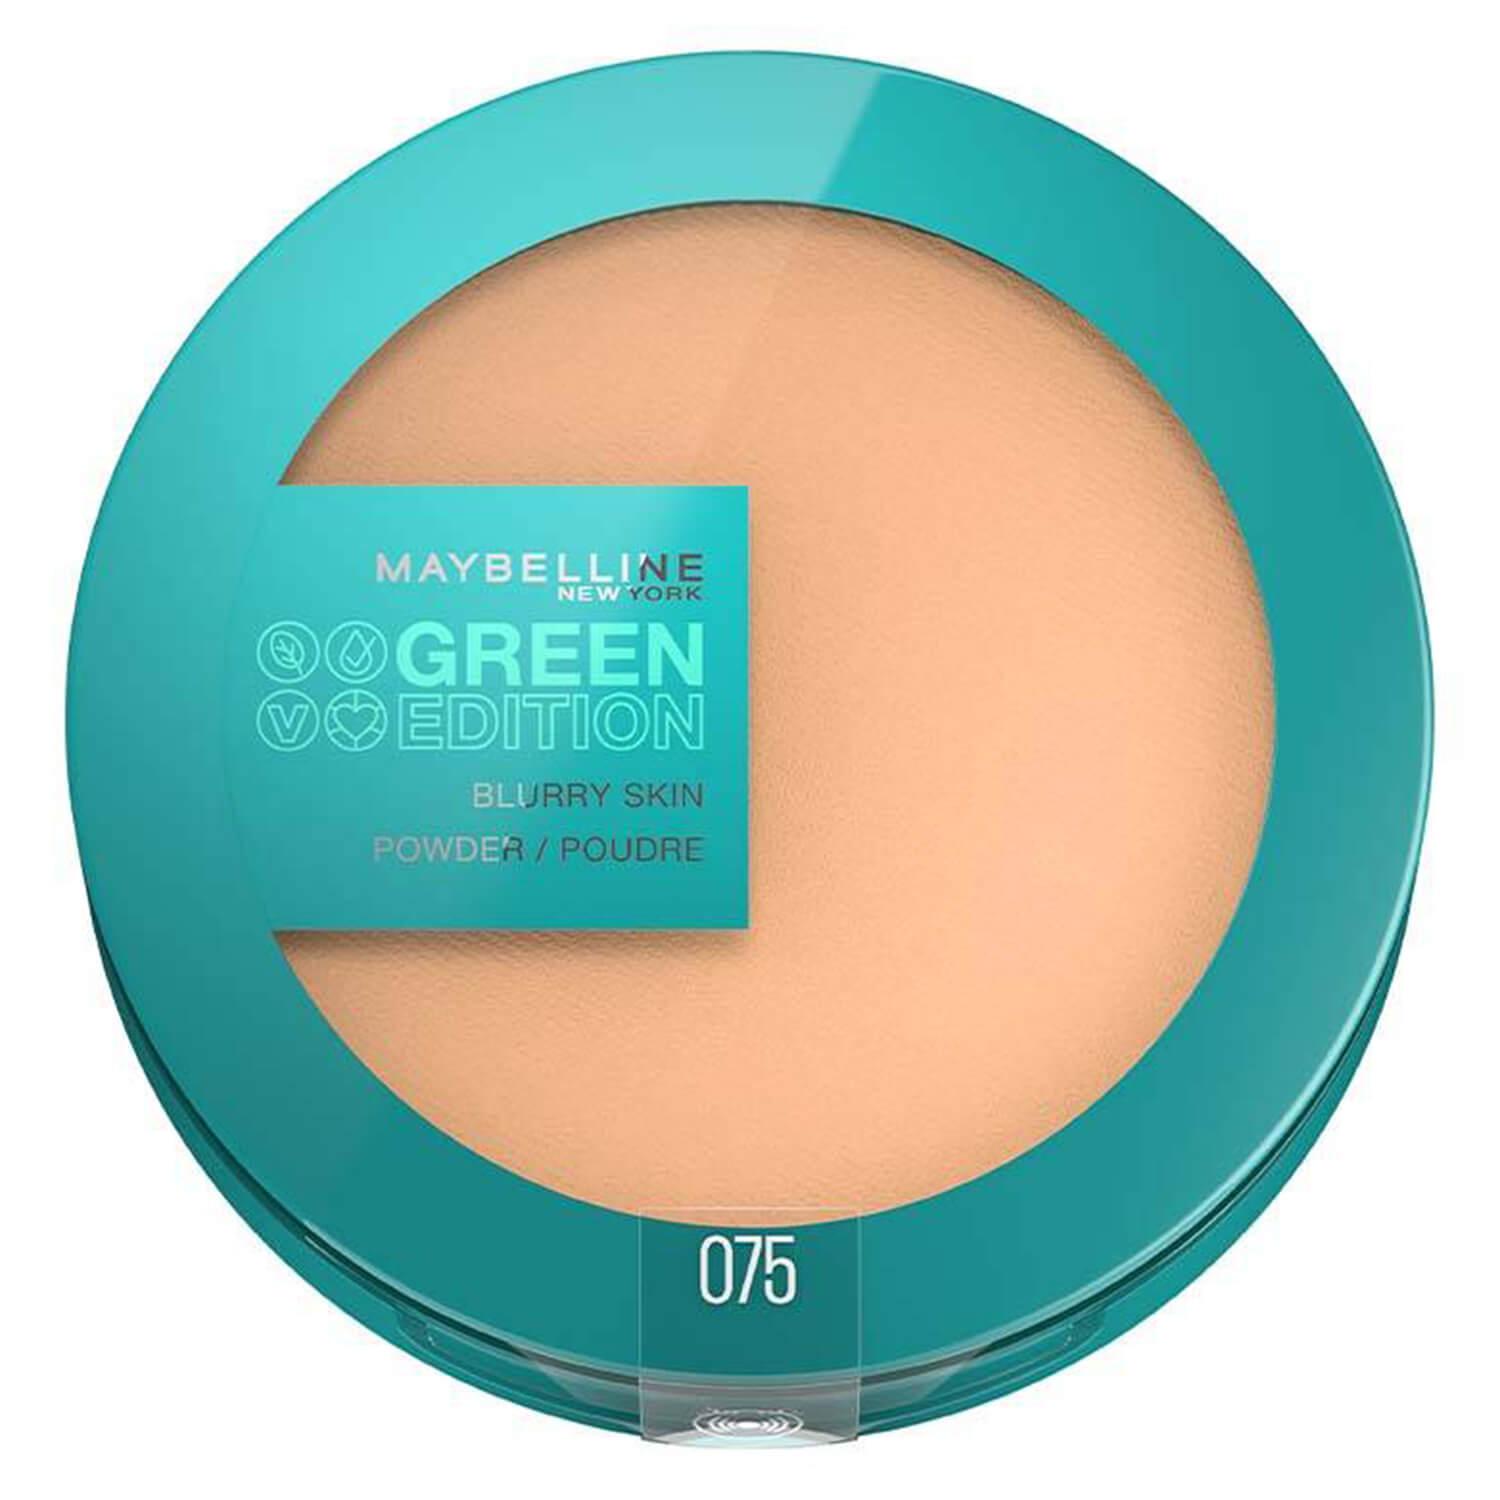 Maybelline NY Teint - Green Edition Blurry Skin Powder 075